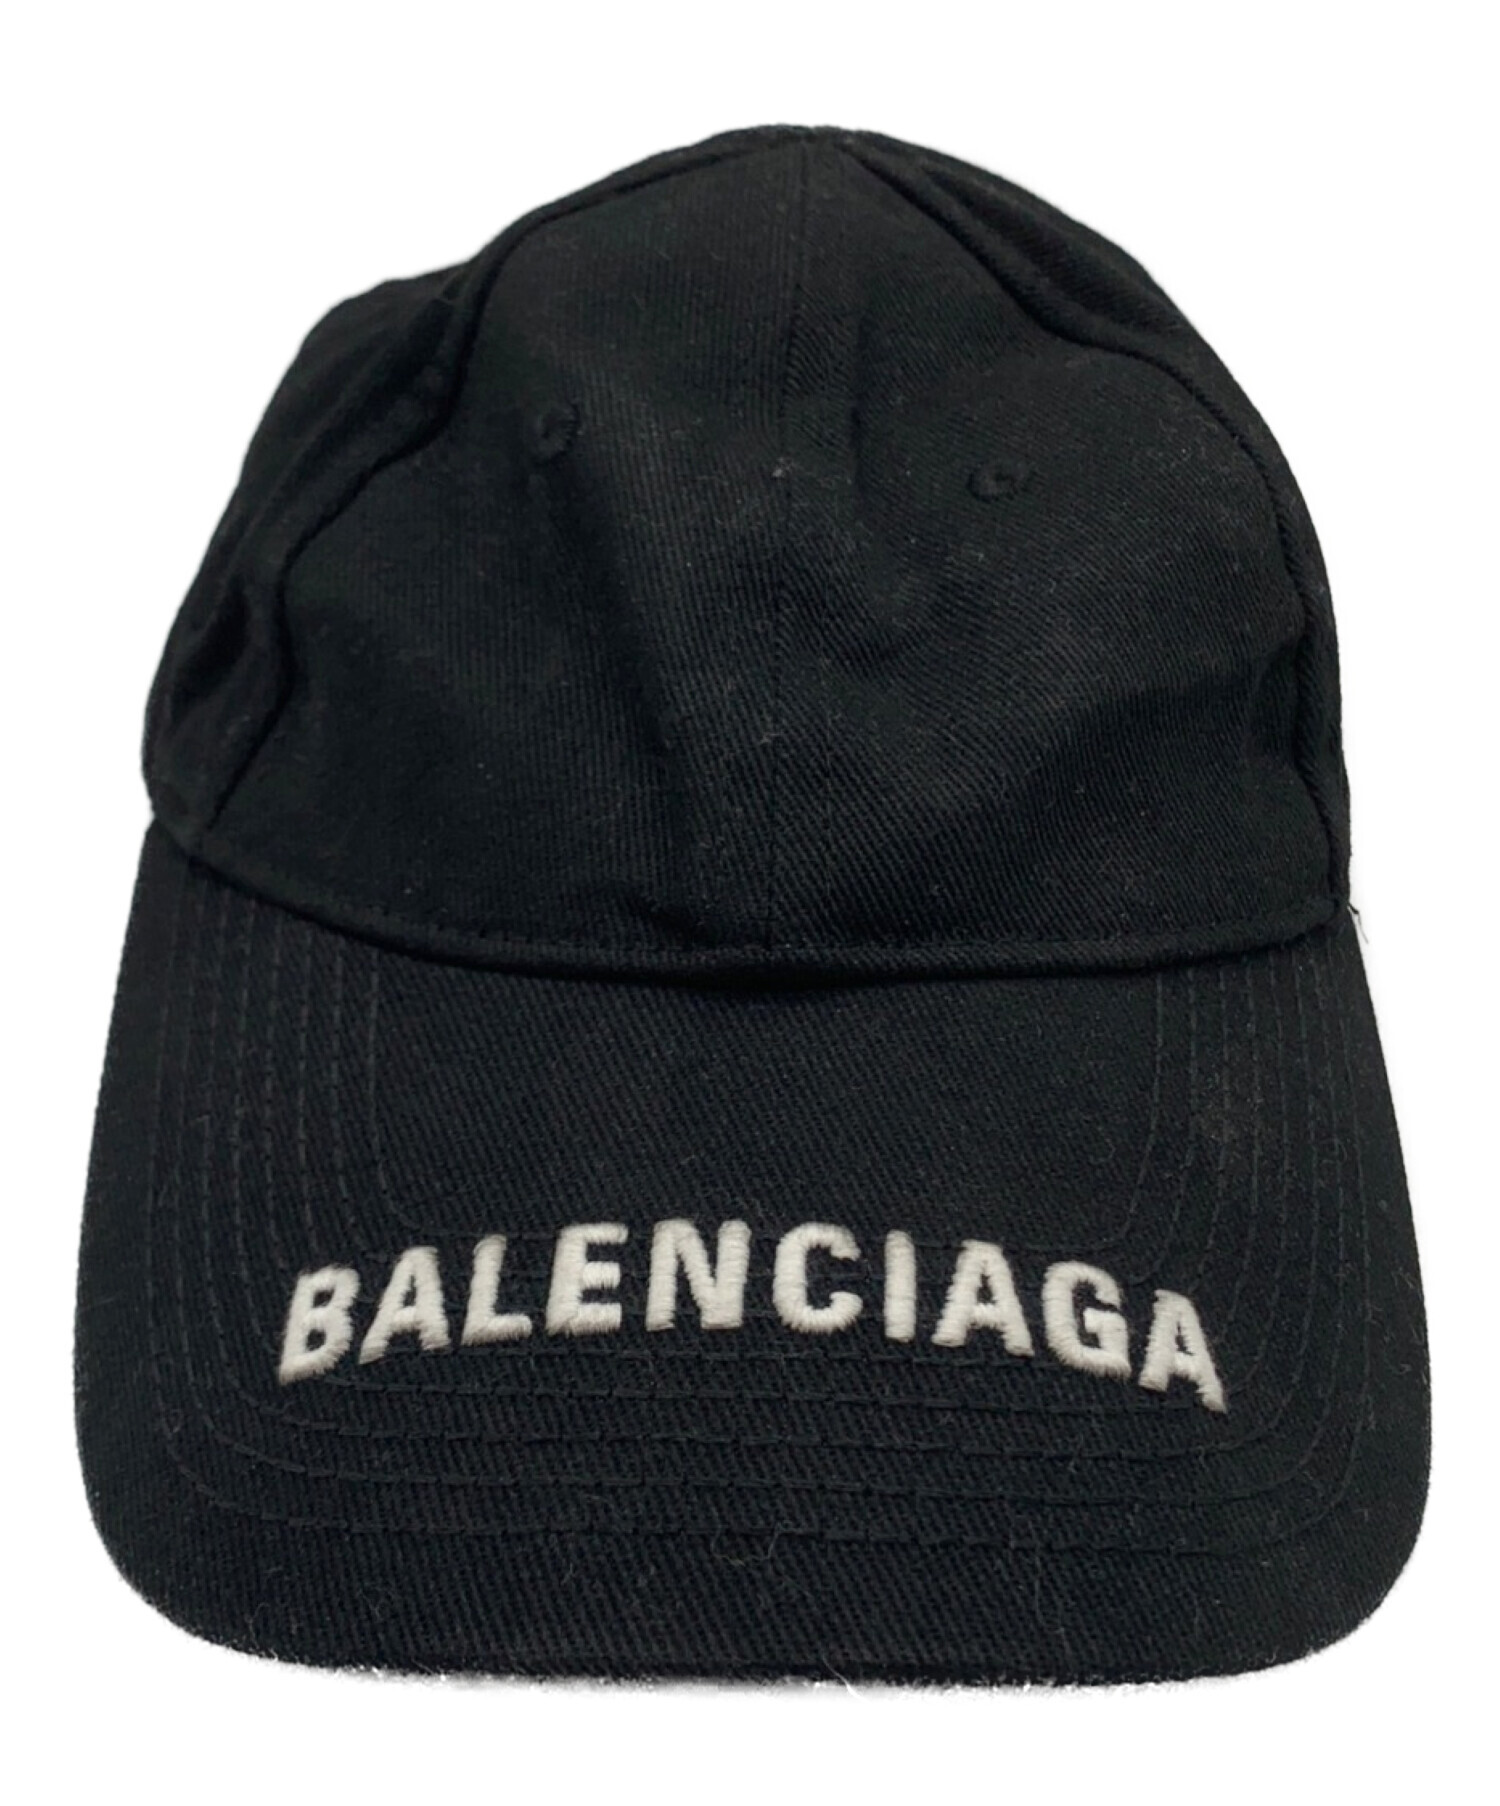 BALENCIAGA (バレンシアガ) ロゴバイザーキャップ ブラック サイズ:58ｃｍ